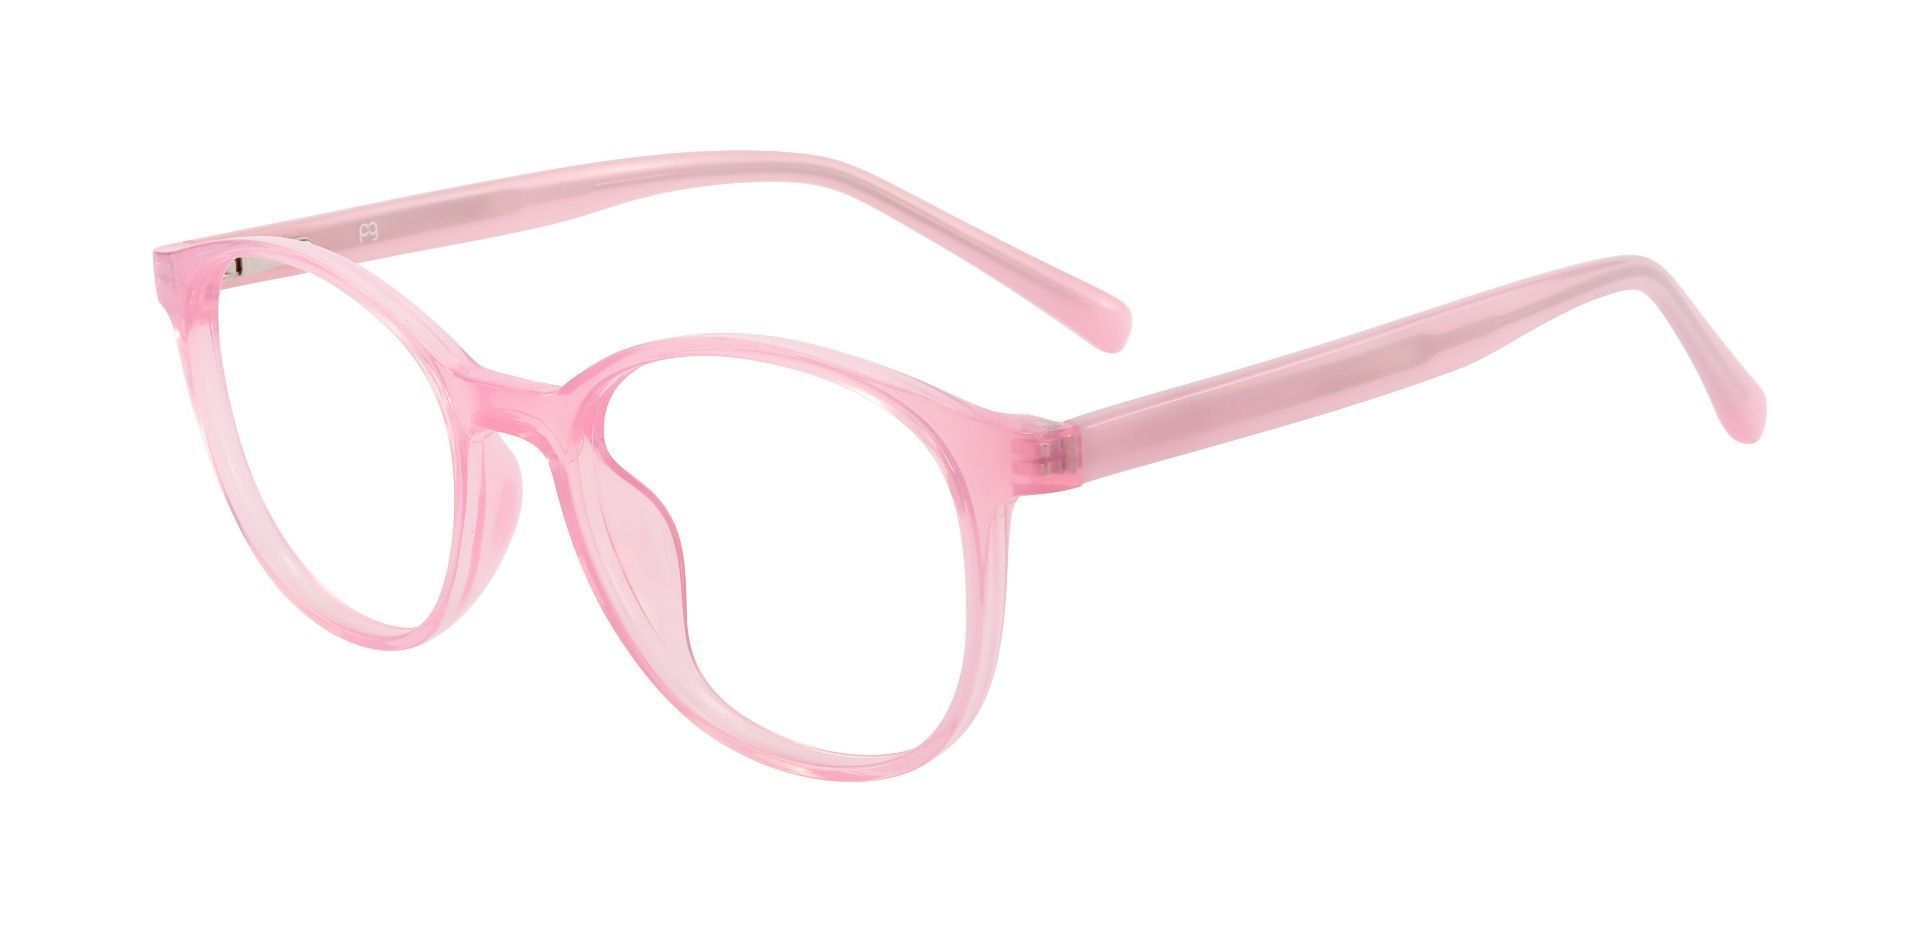 Gleason Oval Prescription Glasses - Pink